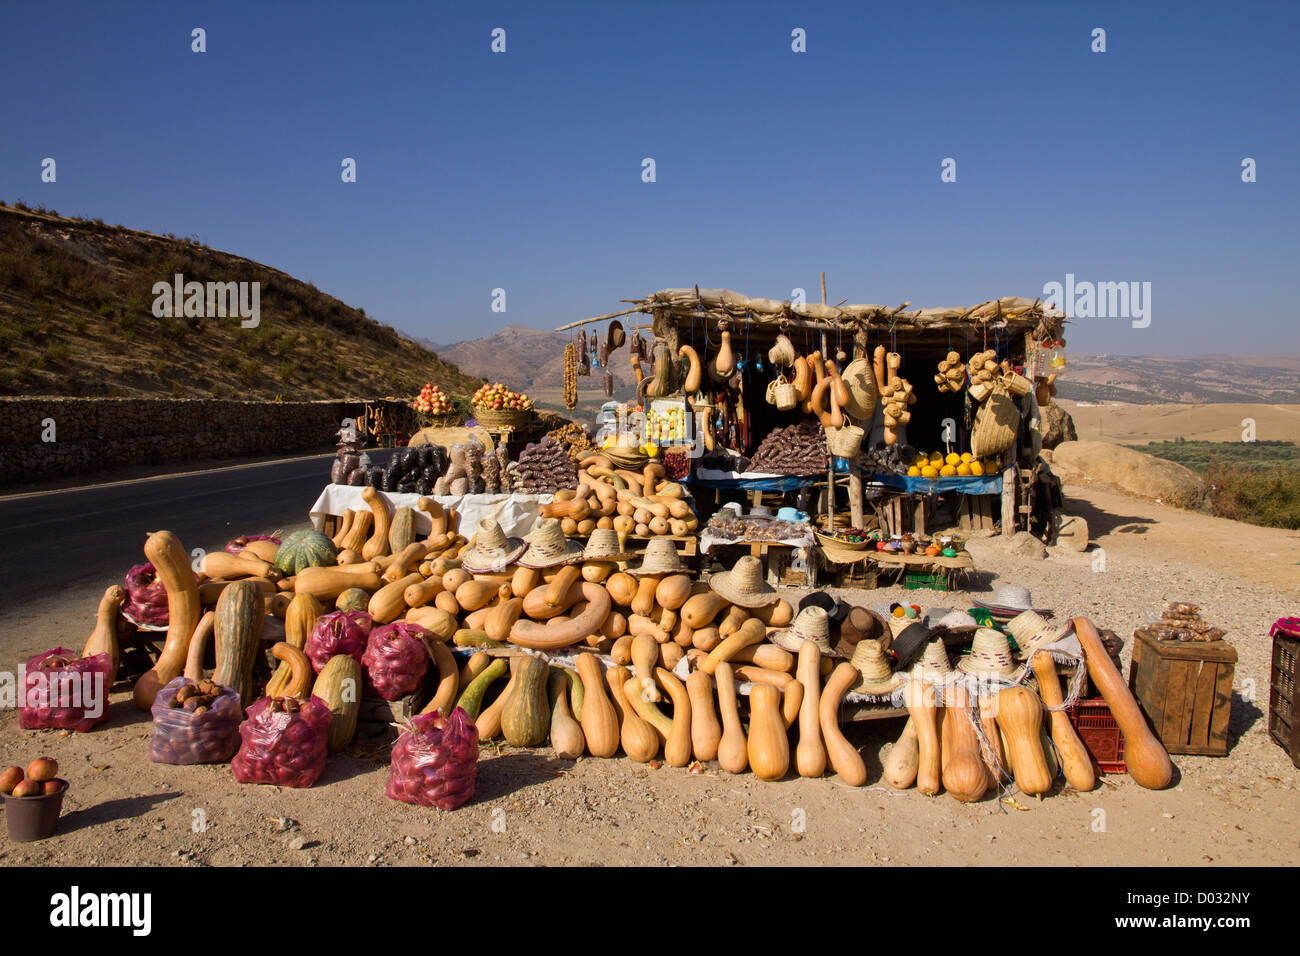 Una pantalla de calabazas, para la venta de frutas y verduras en la carretera en Marruecos. Foto de stock